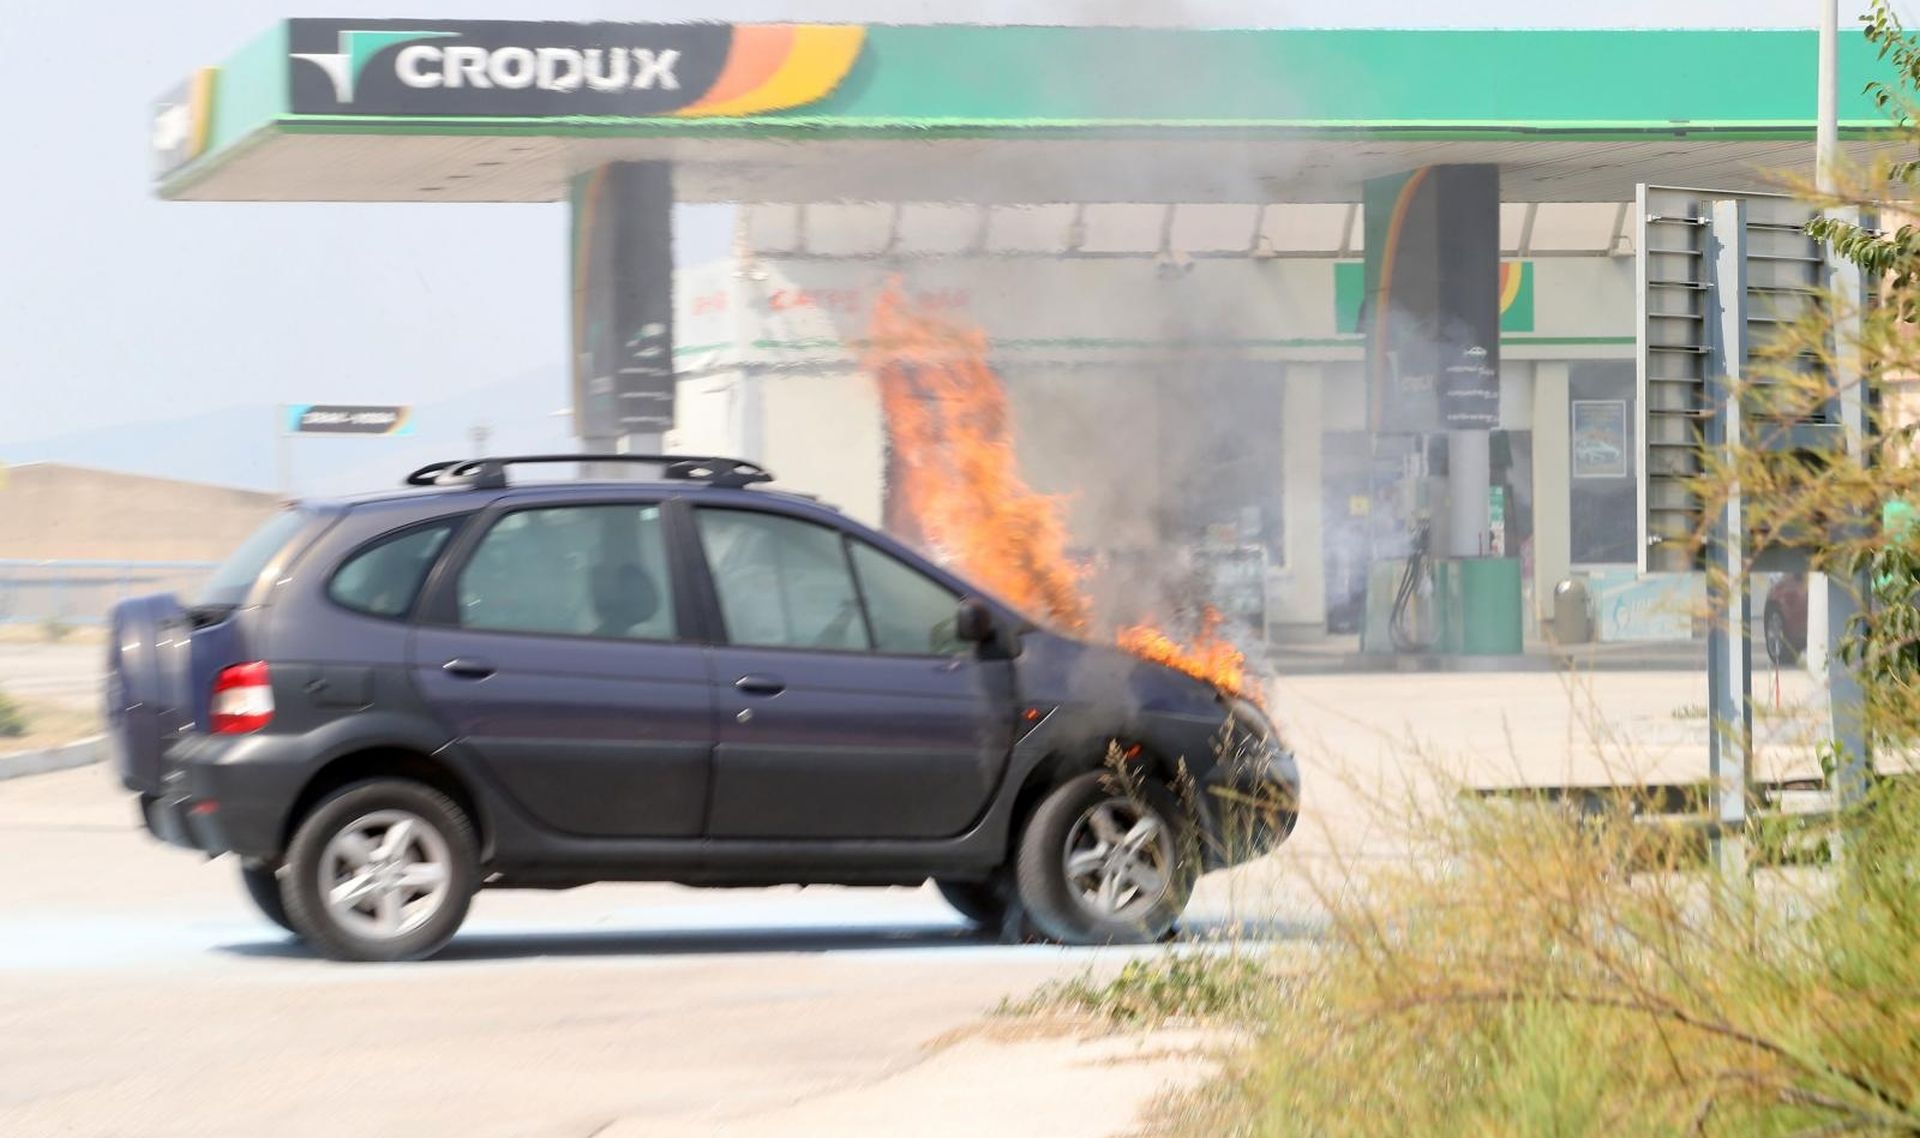 23.08.2019., Split - Na ulazu u Croduxovu benzinsku postaju na Dujmovaci zapalio se osobni automobil koji je zahvaljujuci pravovremenoj intervenciji vatrogasaca brzo ugasen. Photo: Ivo Cagalj/PIXSELL